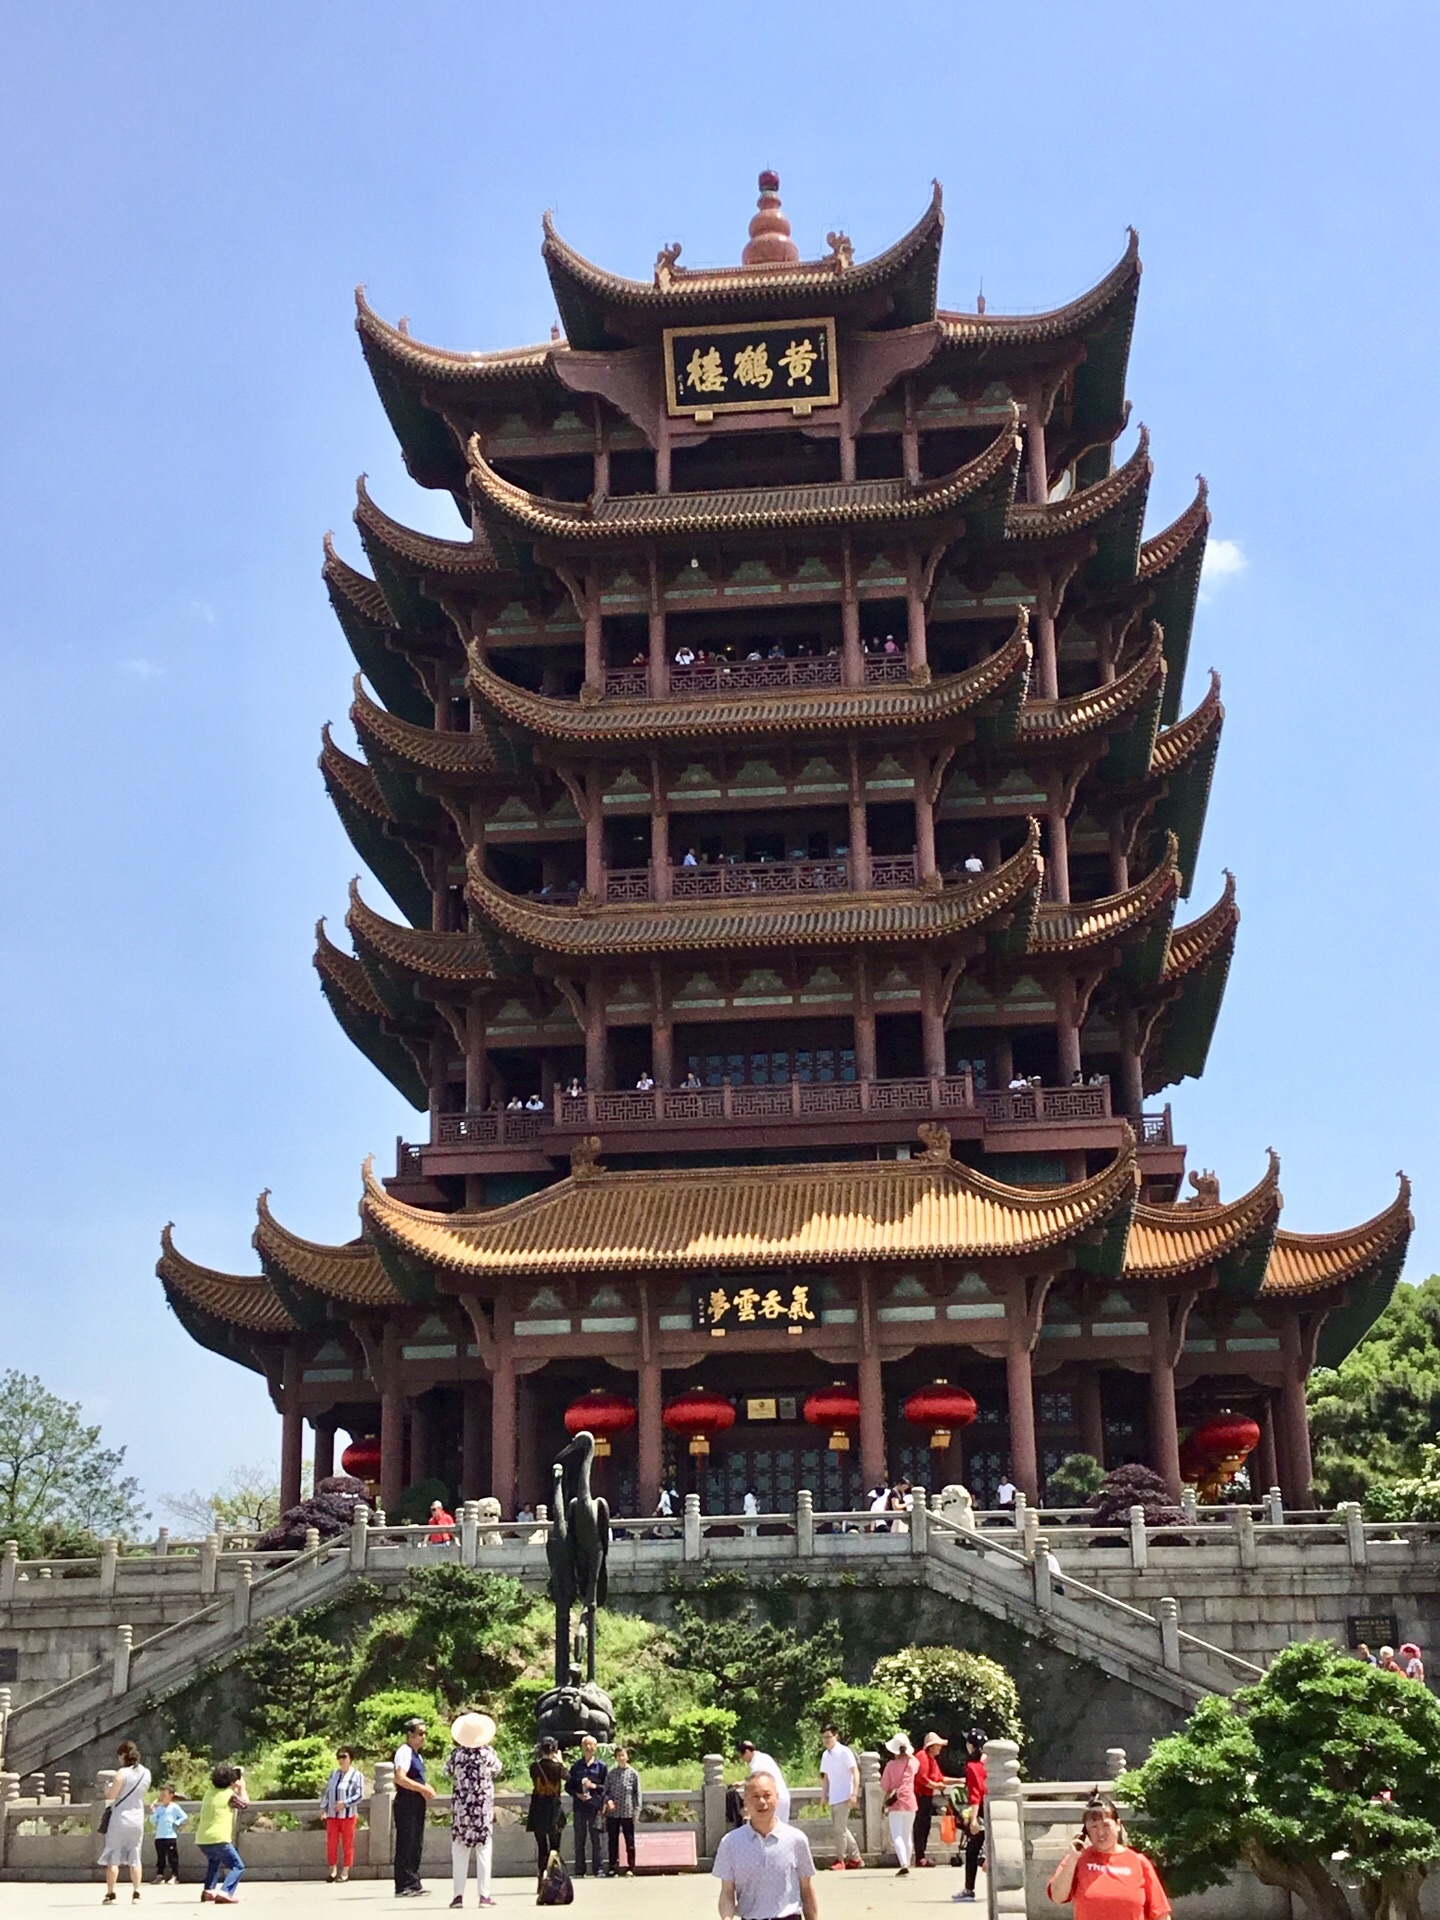 如果你是第一次到武汉,那么一定要记得登黄鹤楼看长江大桥,飞架长江的